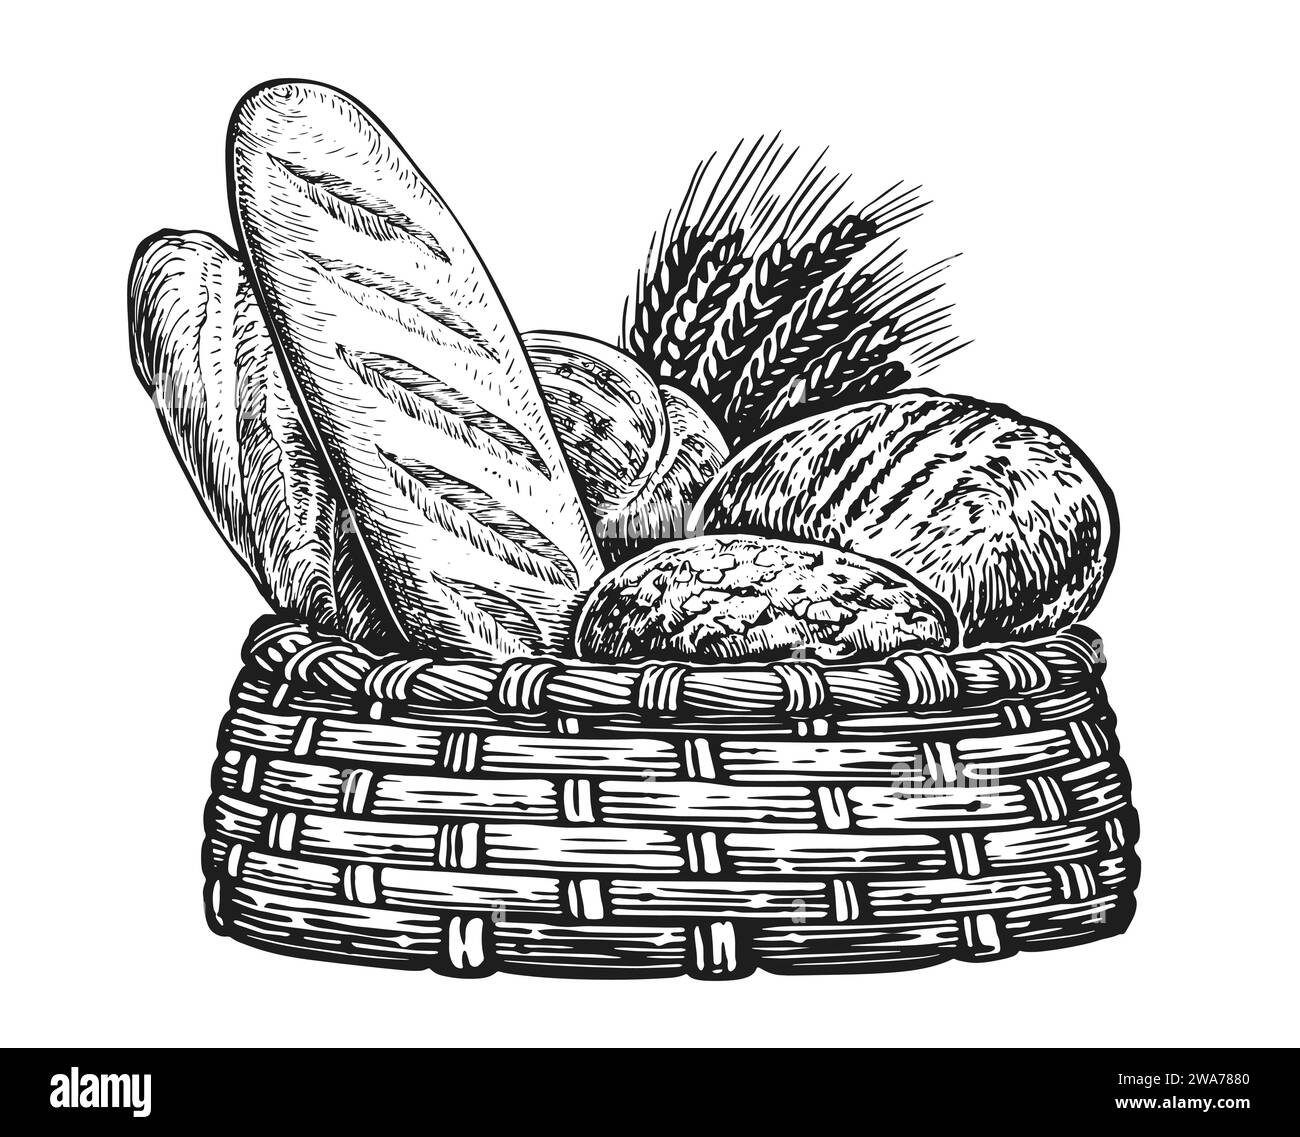 Illustrazione del disegno di pane e spighe di grano. Prodotti da forno freschi in cestino, vintage Illustrazione Vettoriale